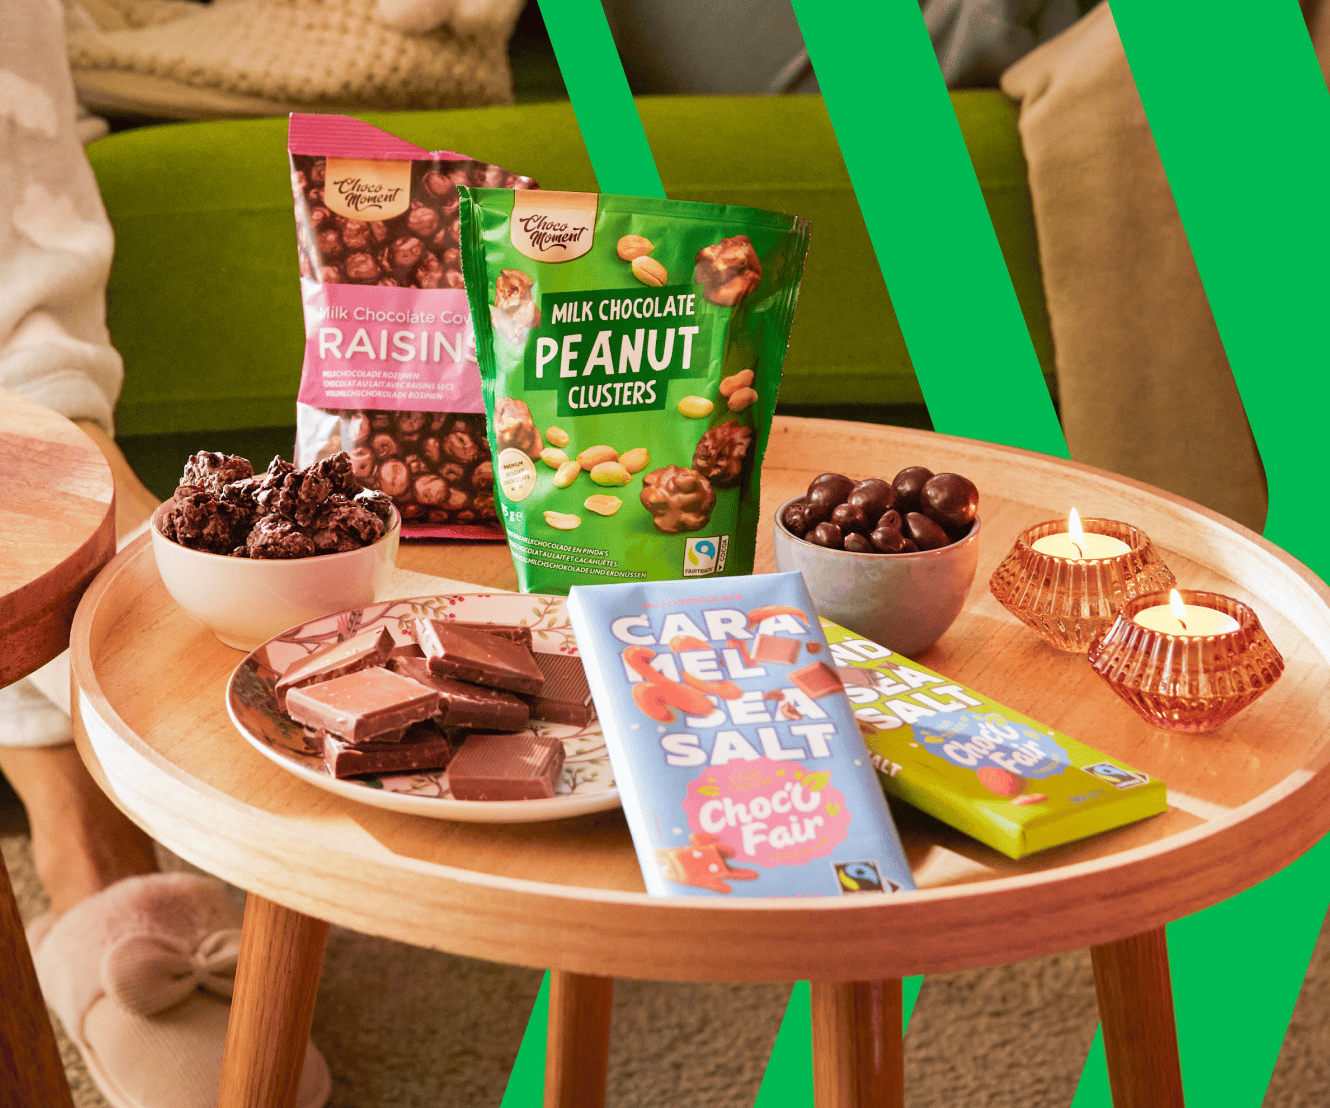 Al onze eigen merk chocolade is Fairtrade gecertificeerd.